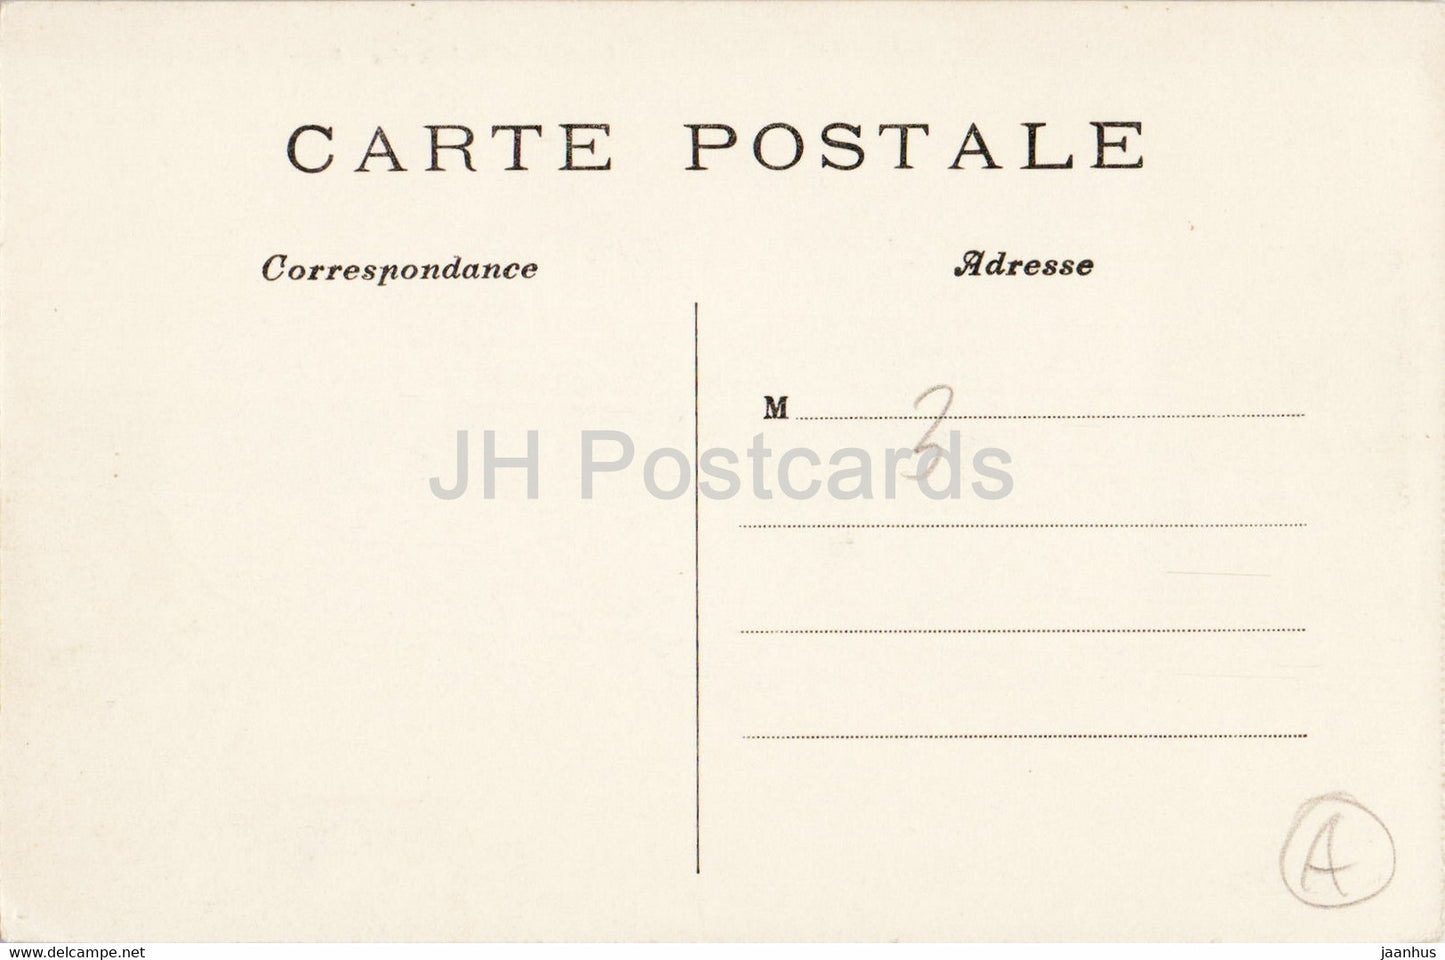 Paris - Le Grand Palais des Champs Elysées - 10 - carte postale ancienne - France - inutilisée